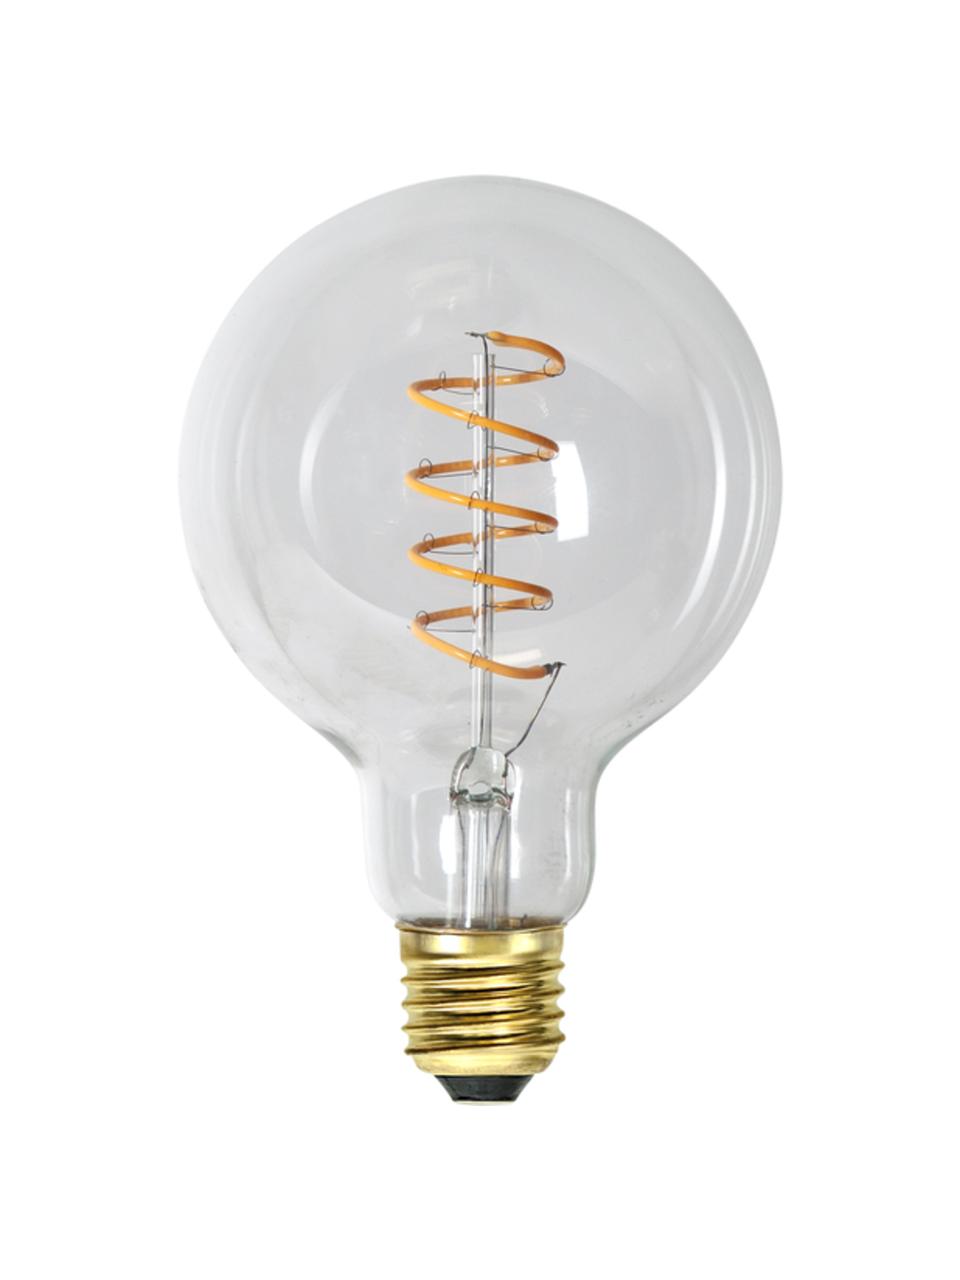 Ampoule (E27 - 270 lm), blanc chaud, intensité variable, 1 pièce, Transparent, Ø 10 cm x haut. 14 cm